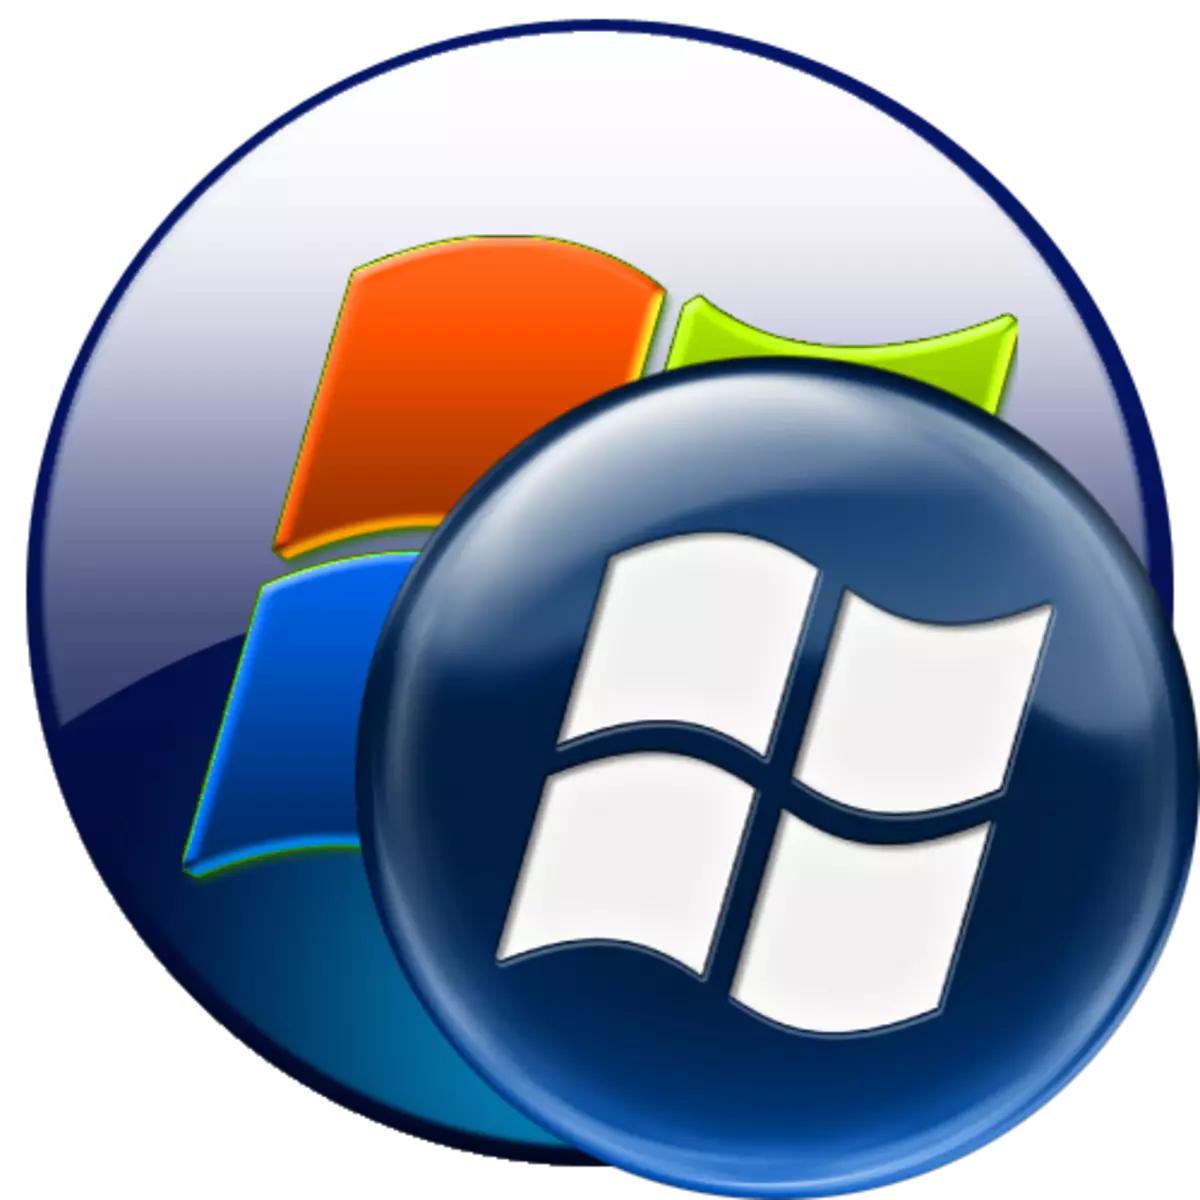 ჩამოკიდებული Windows 7-ში მისასალმებელი ფანჯრის ჩატვირთვისას